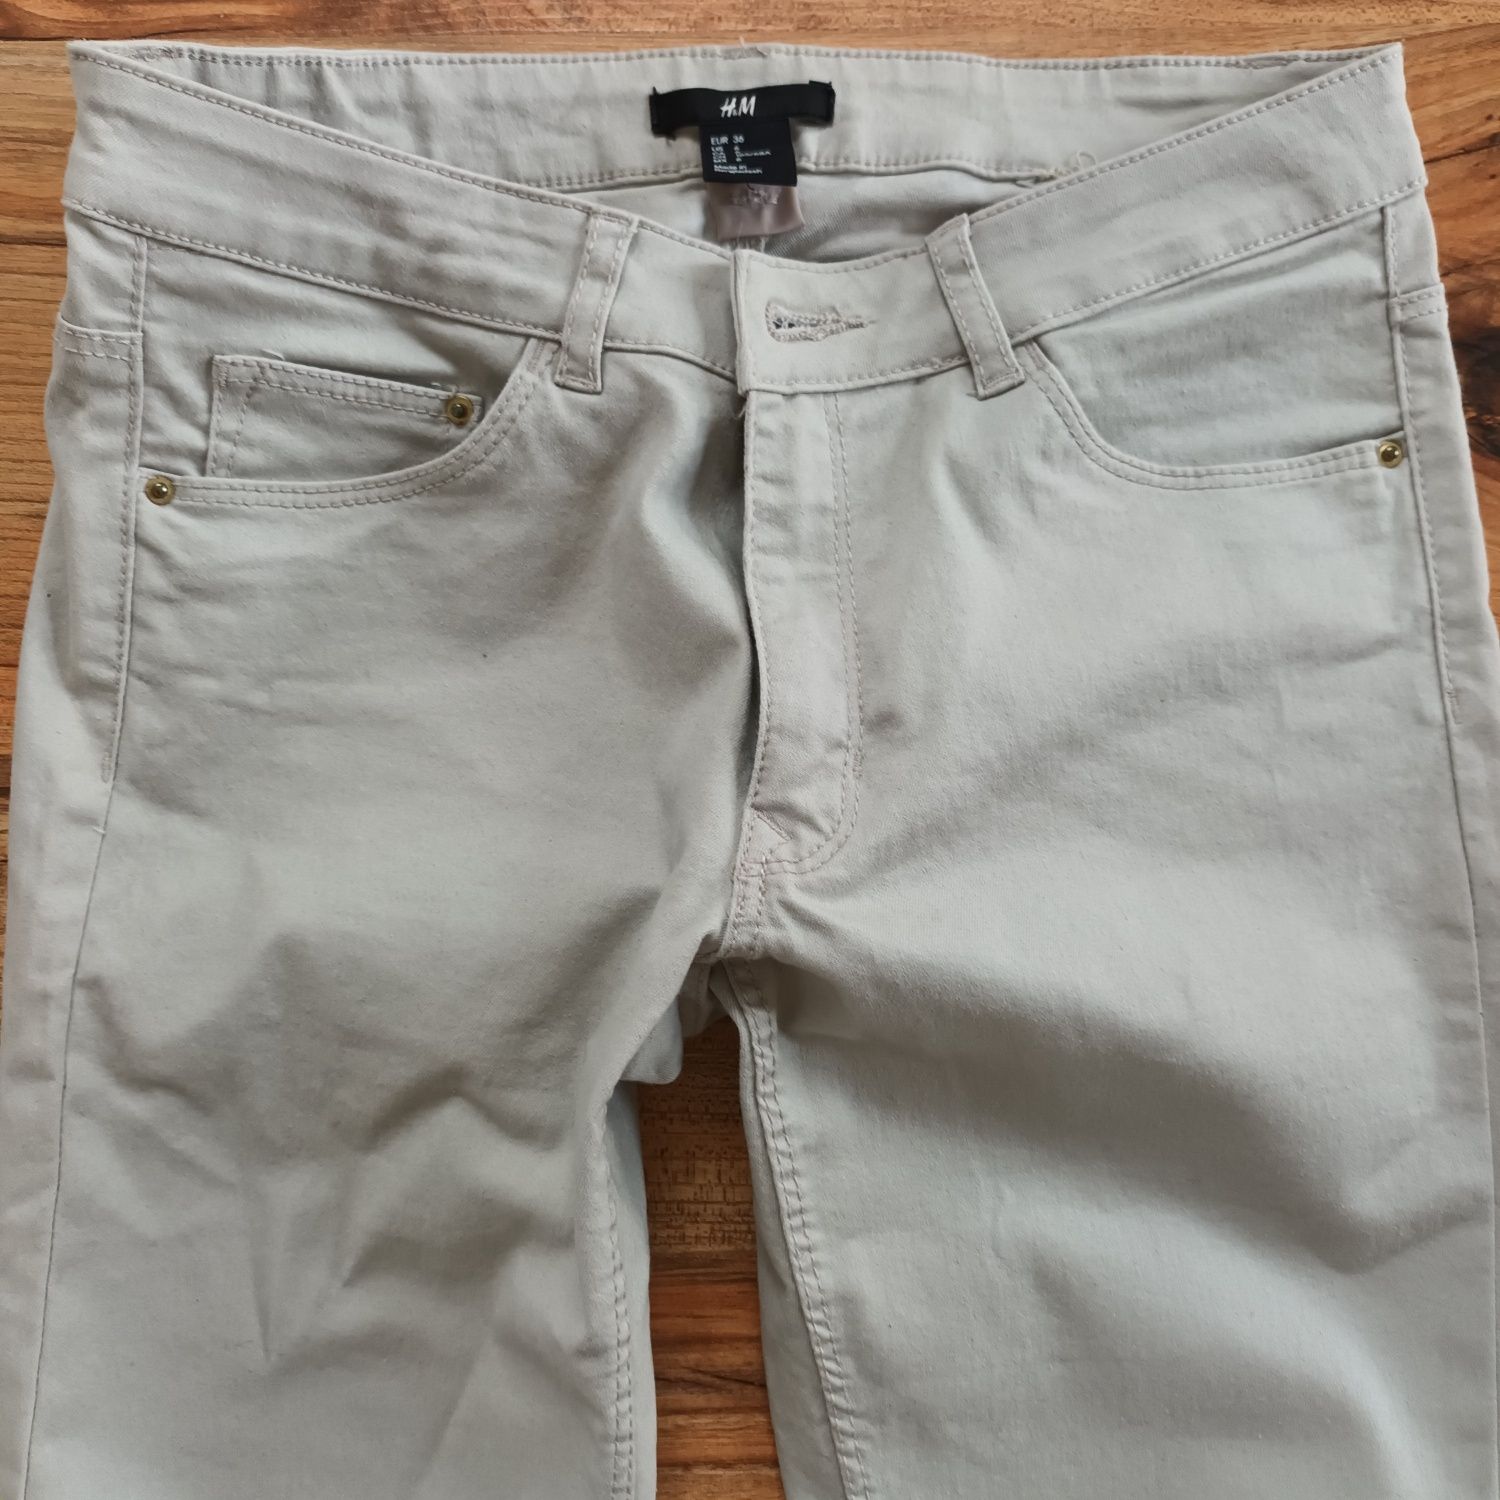 Rurki H&M 36 S jeansy spodnie jeansowe elastyczne 36 S damskie